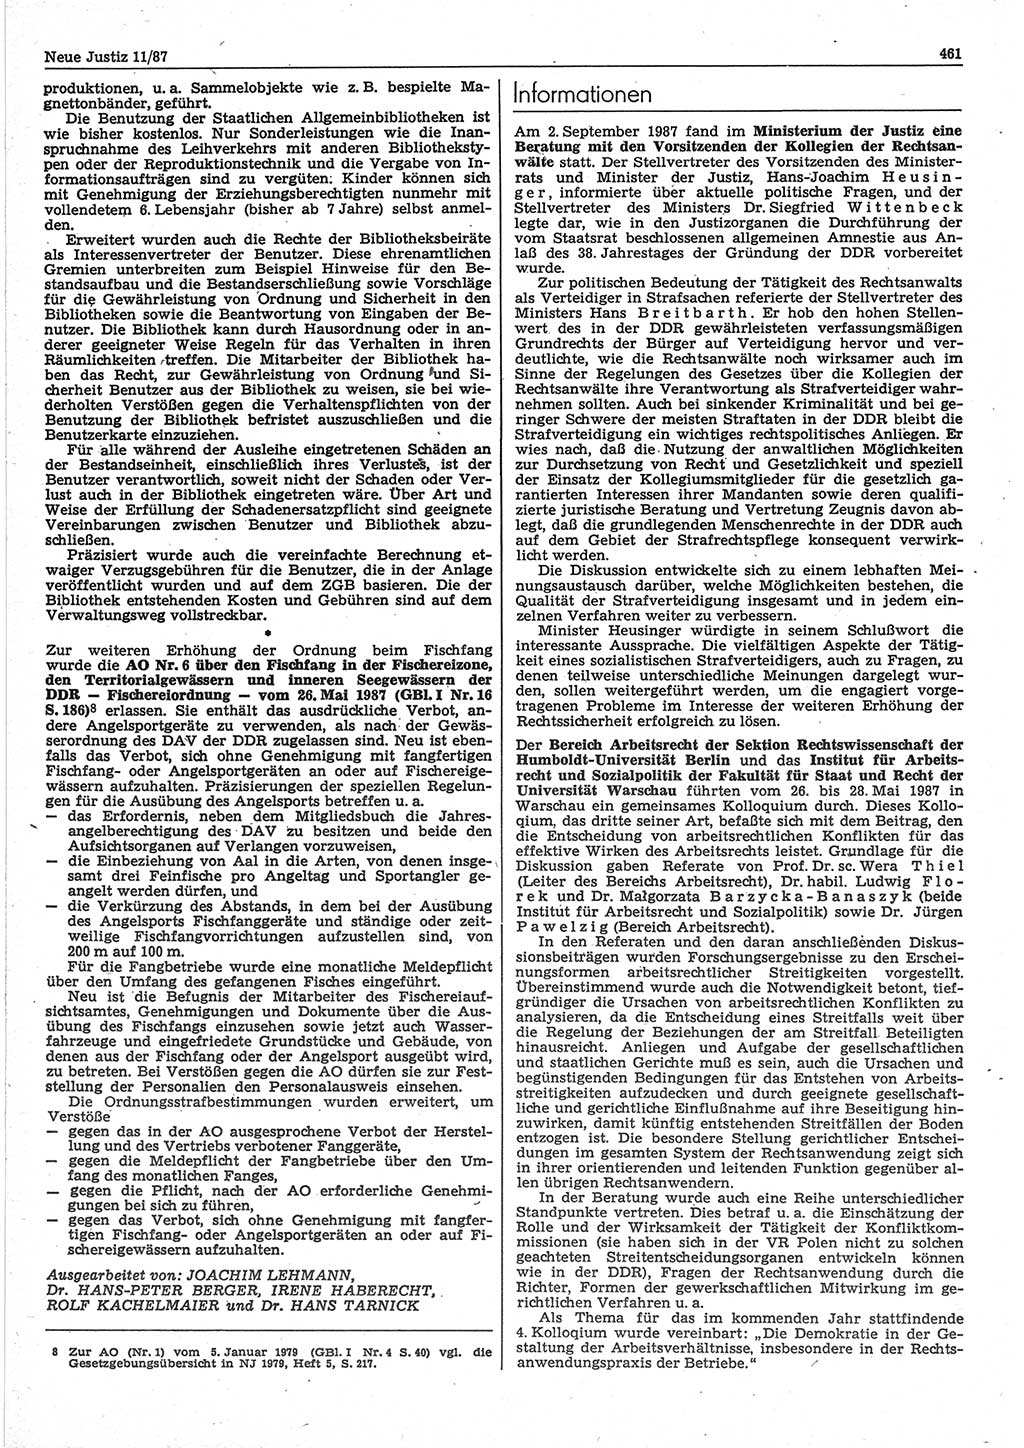 Neue Justiz (NJ), Zeitschrift für sozialistisches Recht und Gesetzlichkeit [Deutsche Demokratische Republik (DDR)], 41. Jahrgang 1987, Seite 461 (NJ DDR 1987, S. 461)